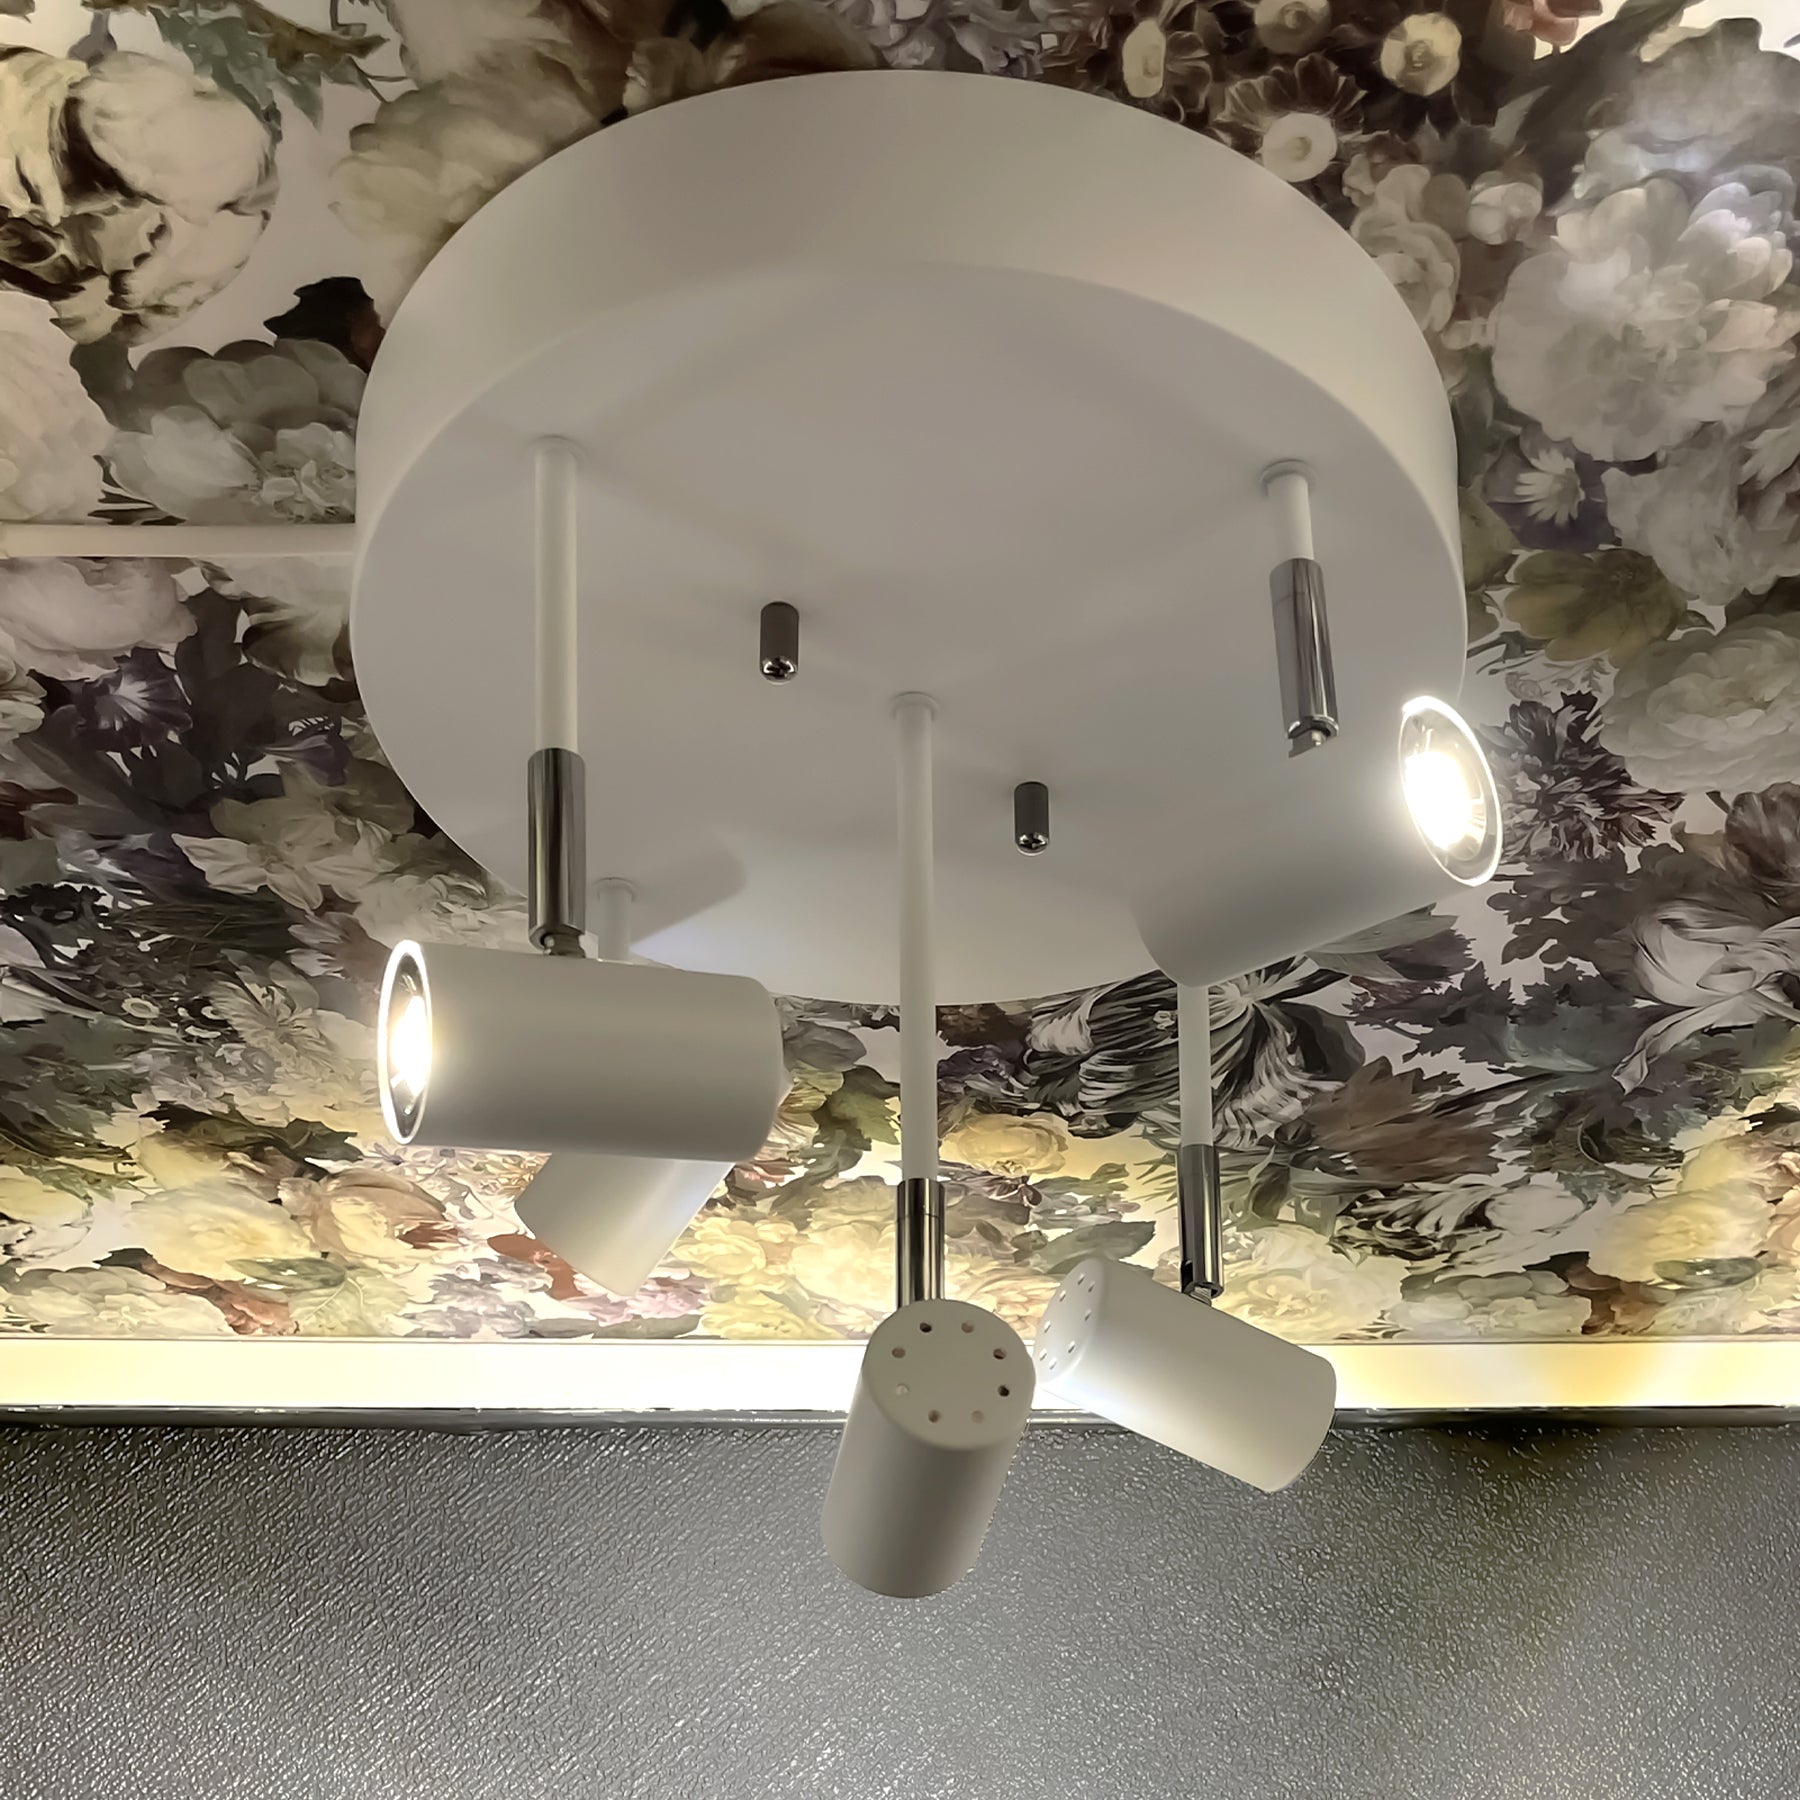 Lysende Gusto spotlight taklampe med fem justerbare spotter i ulik høyde plassert på en rund takplate, laget i hvit metall med detaljer i krom - Aneta belysning